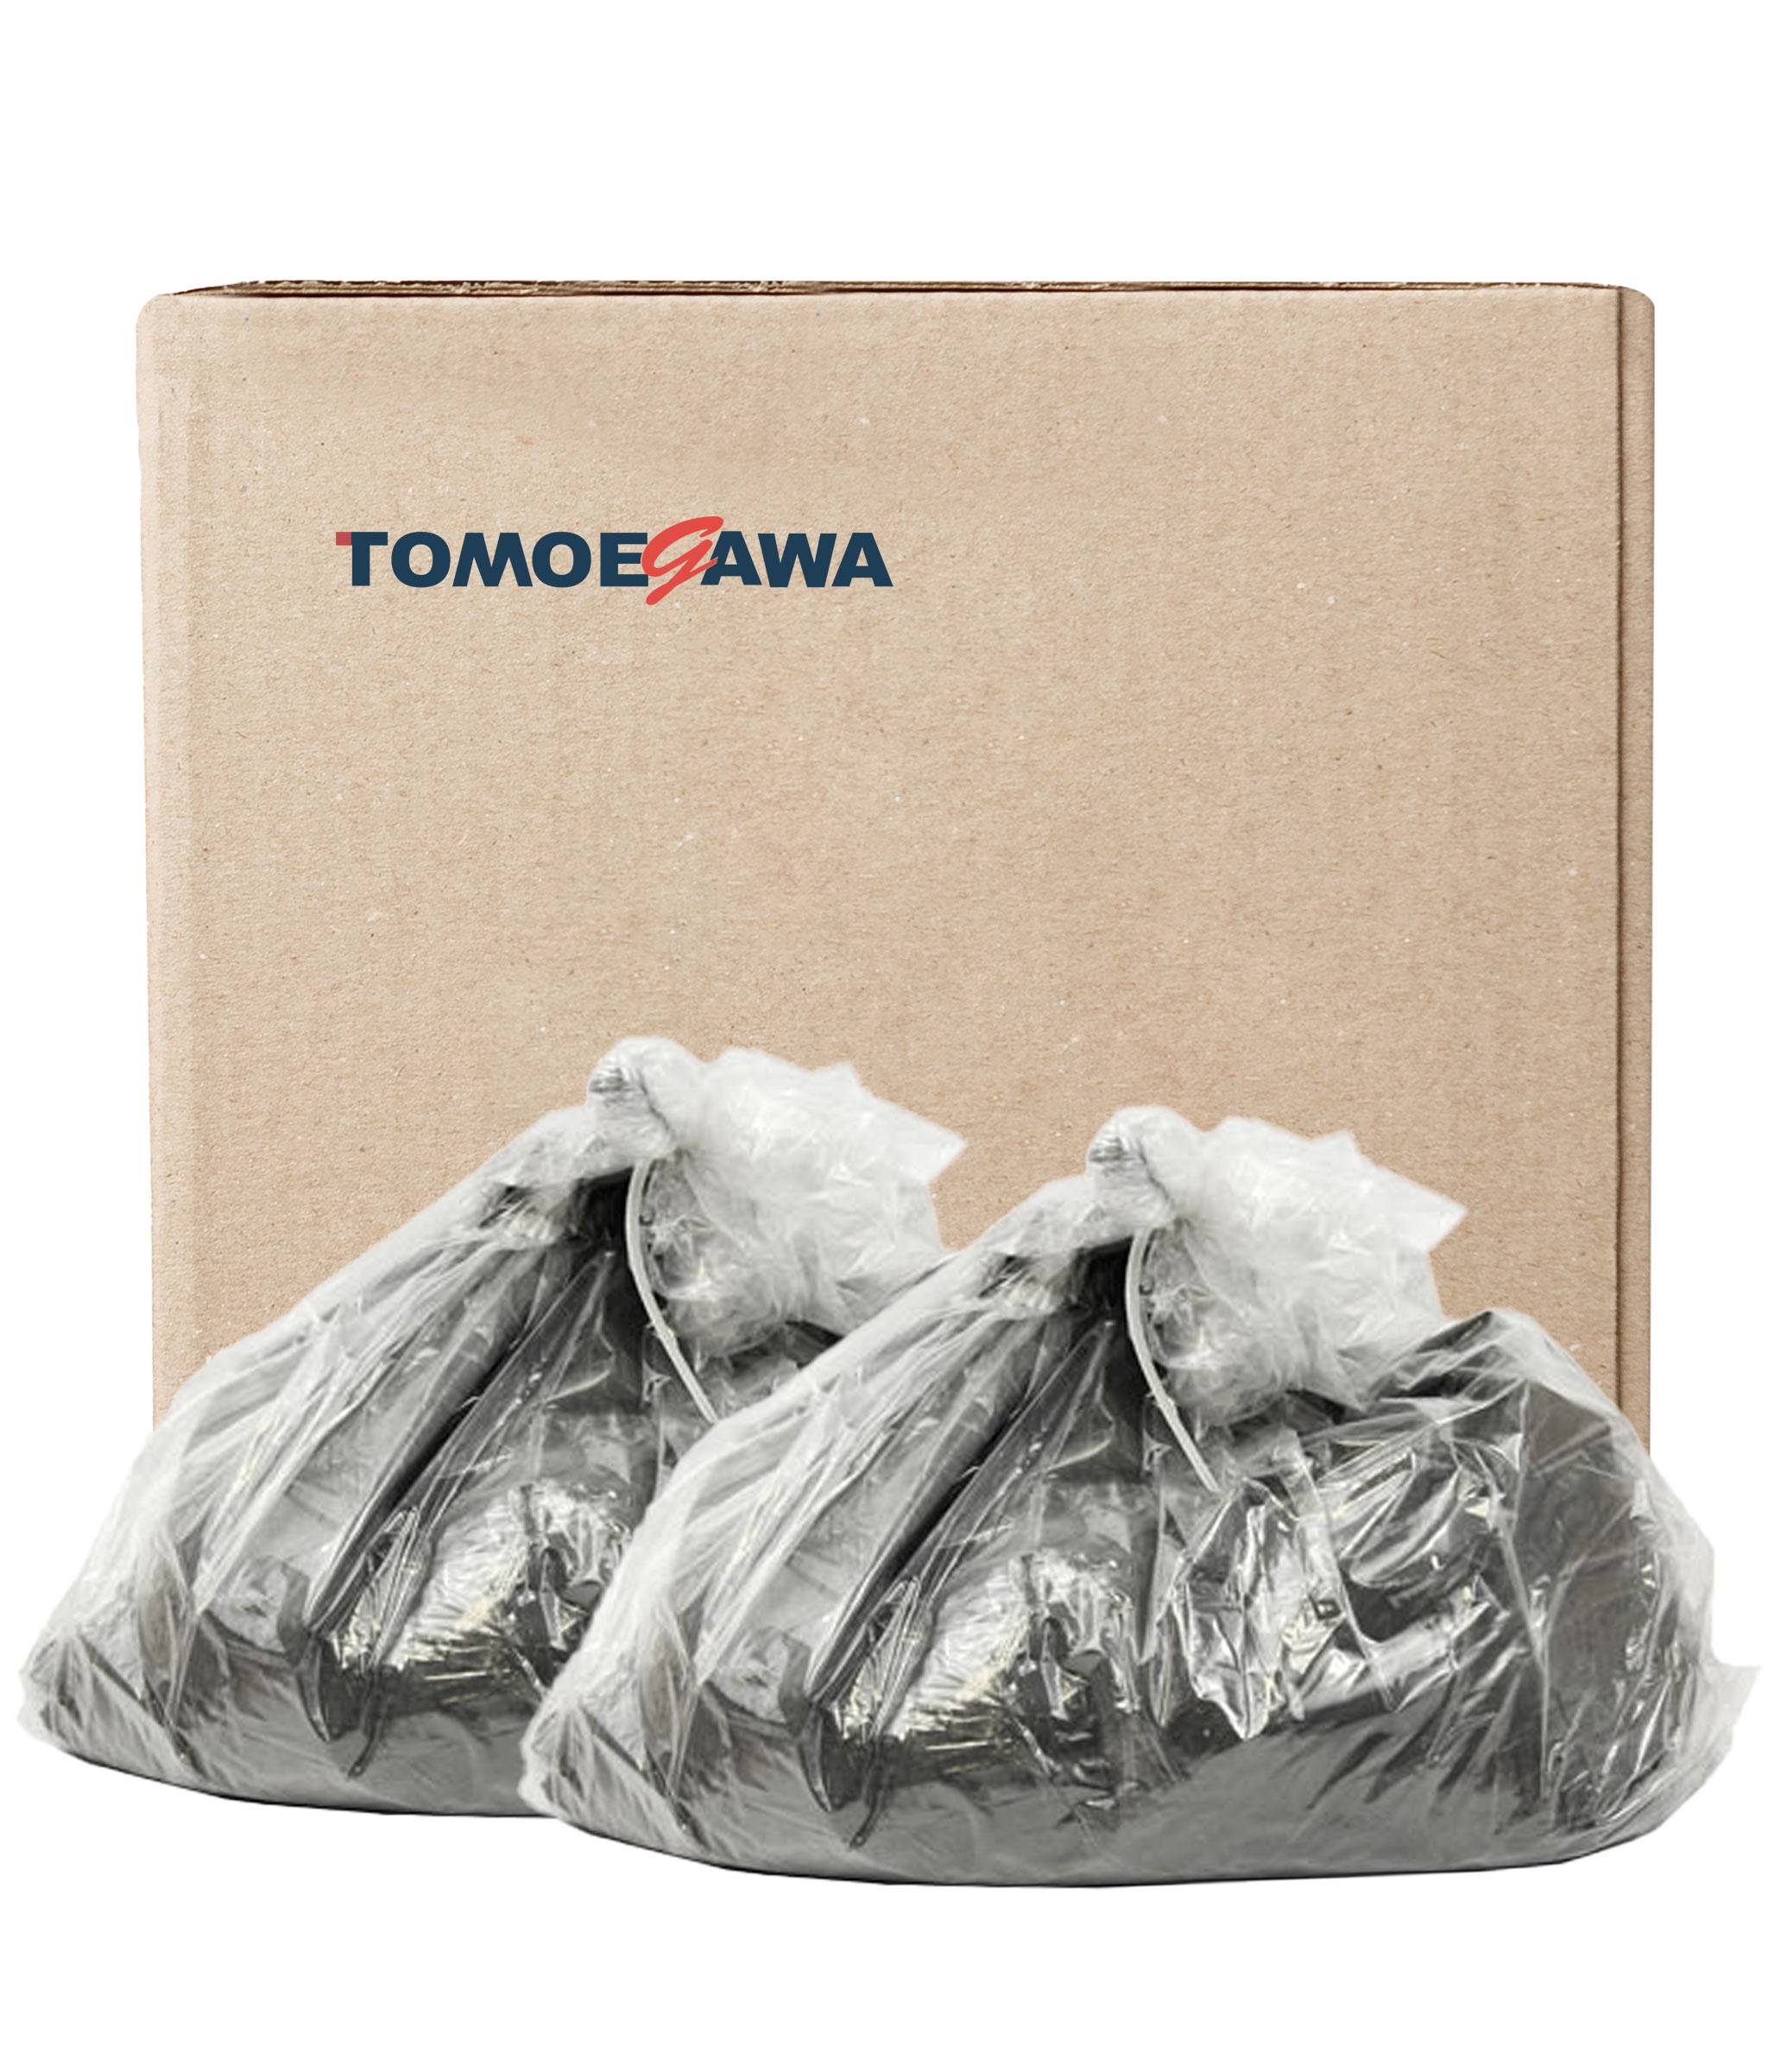 Тонер Kyocera Универсальный ТК-410 (Tomoegawa), коробка 20 кг